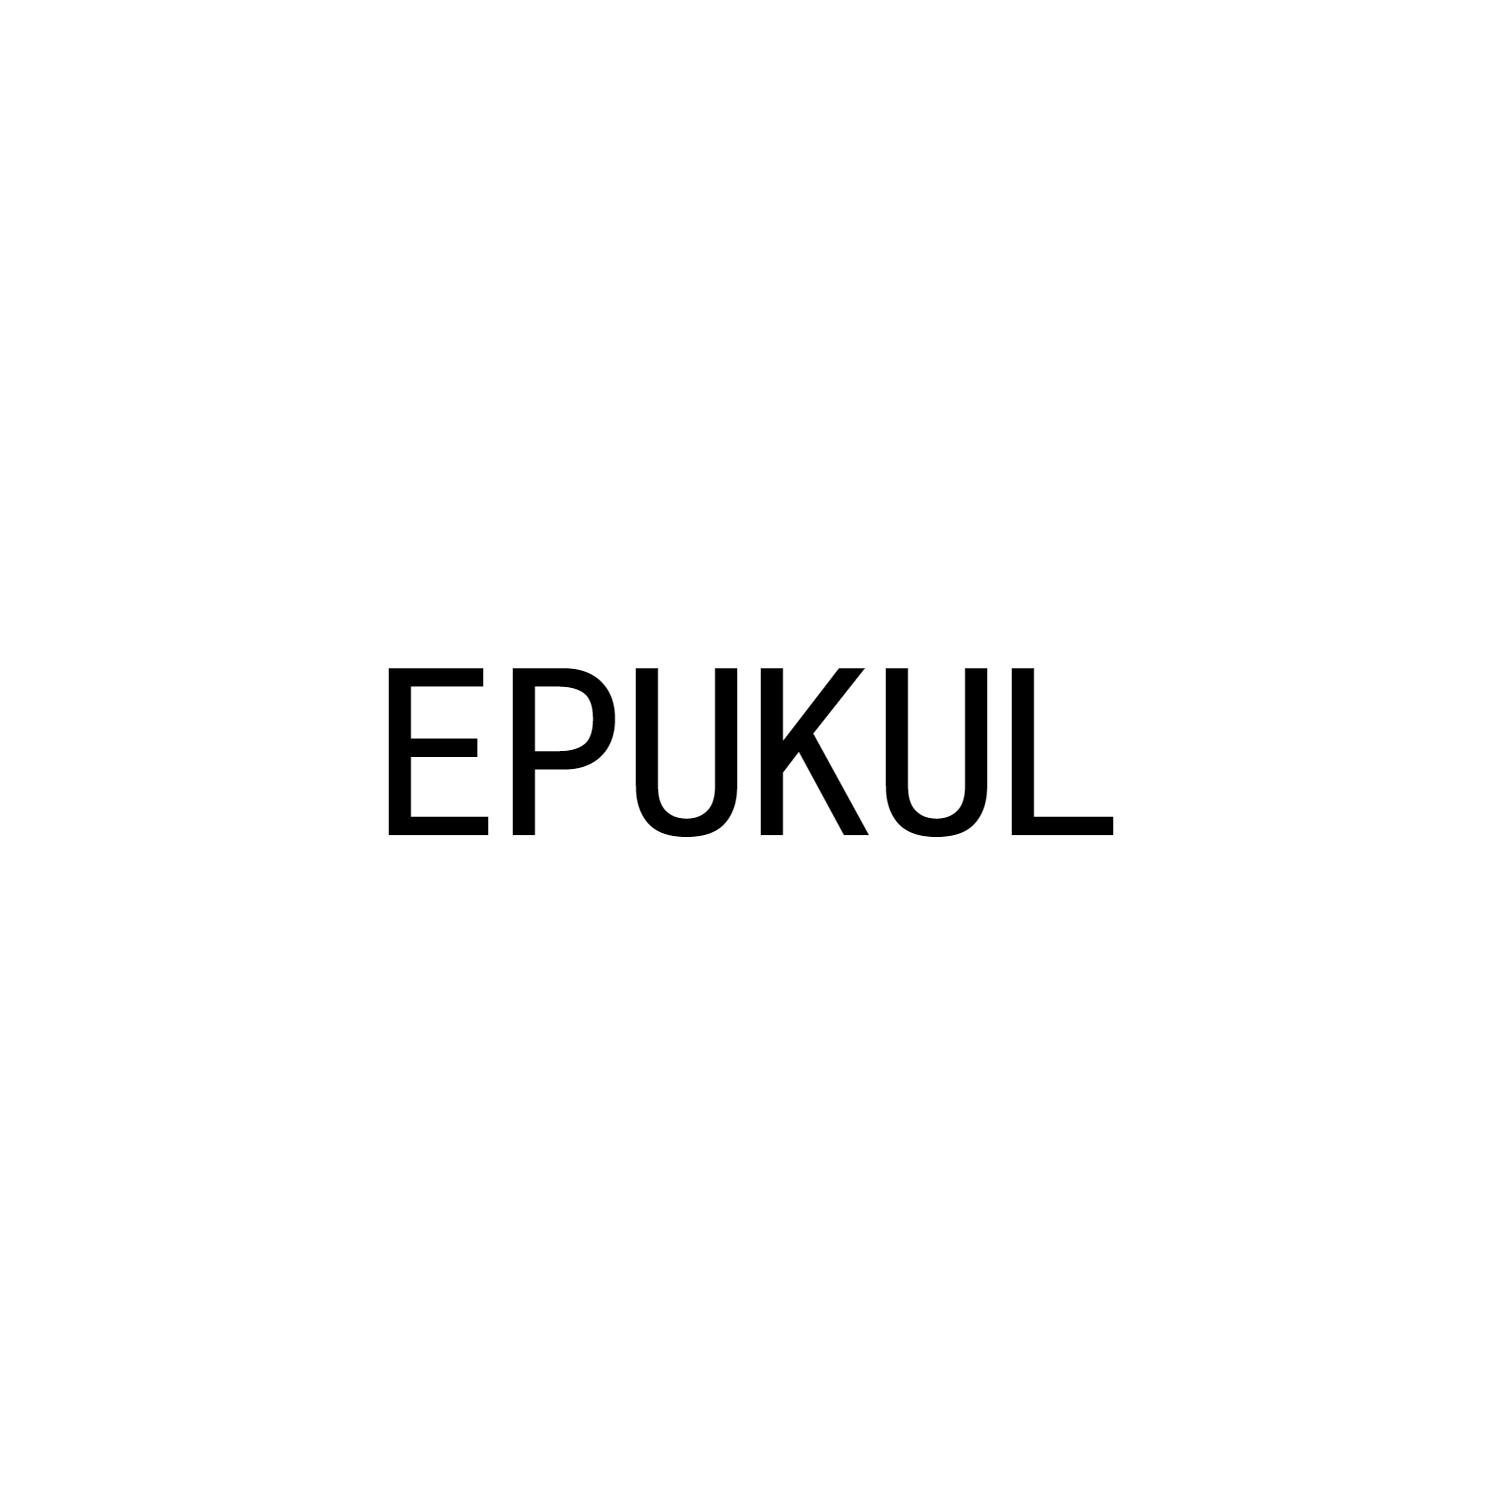 EPUKUL